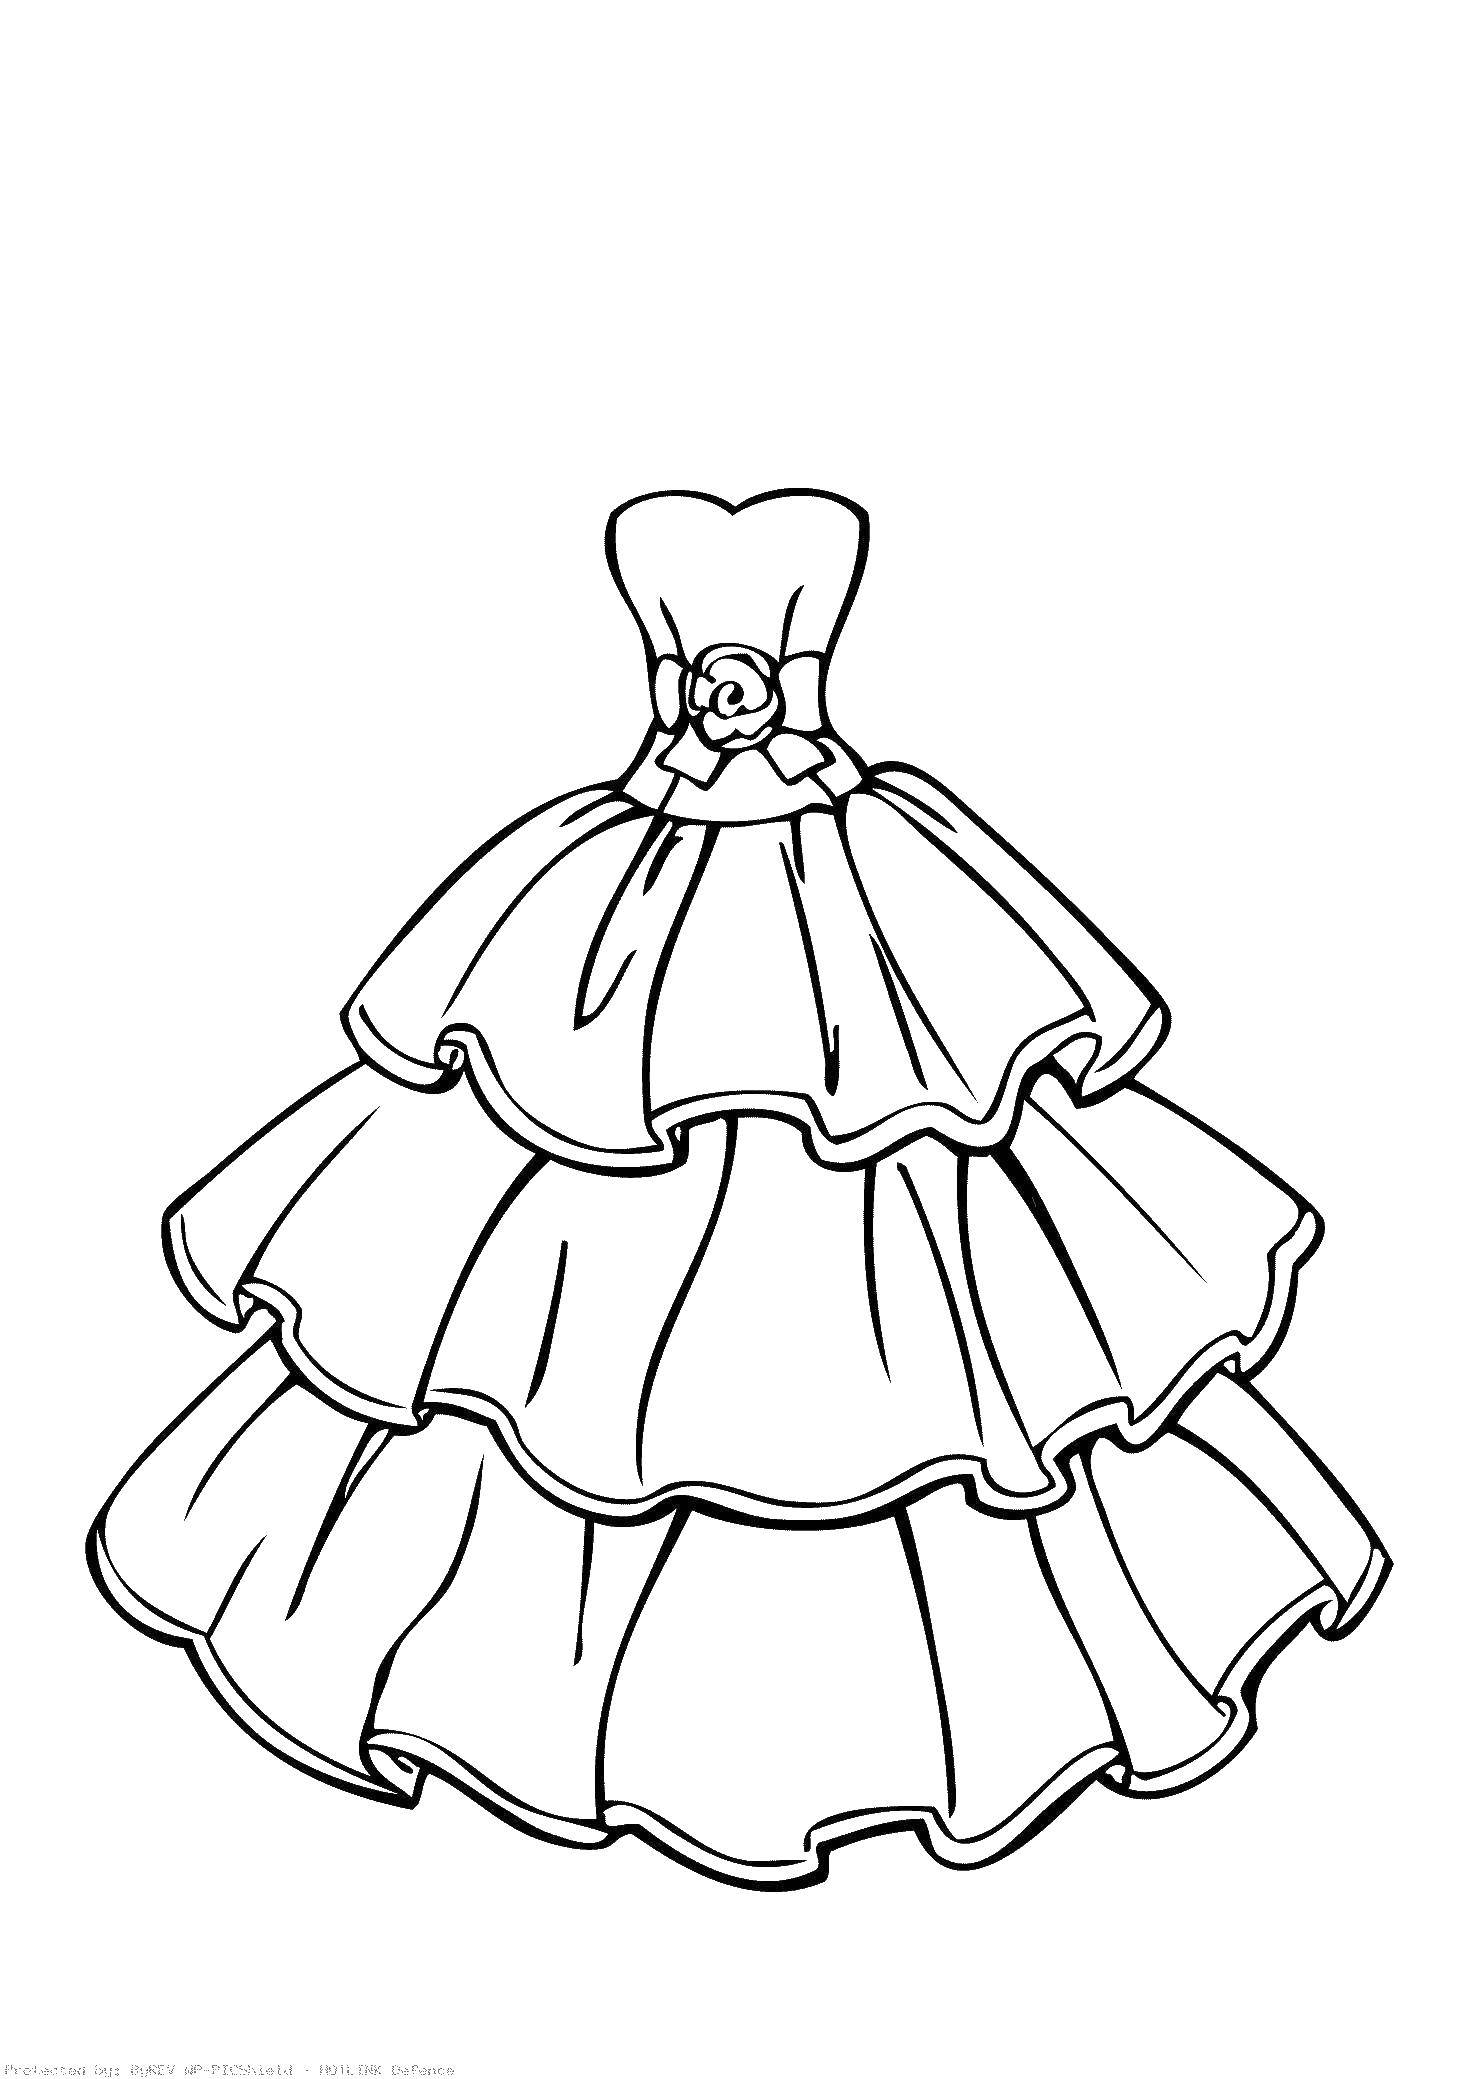 Название: Раскраска Бальное платье. Категория: Платья. Теги: Одежда, платье.